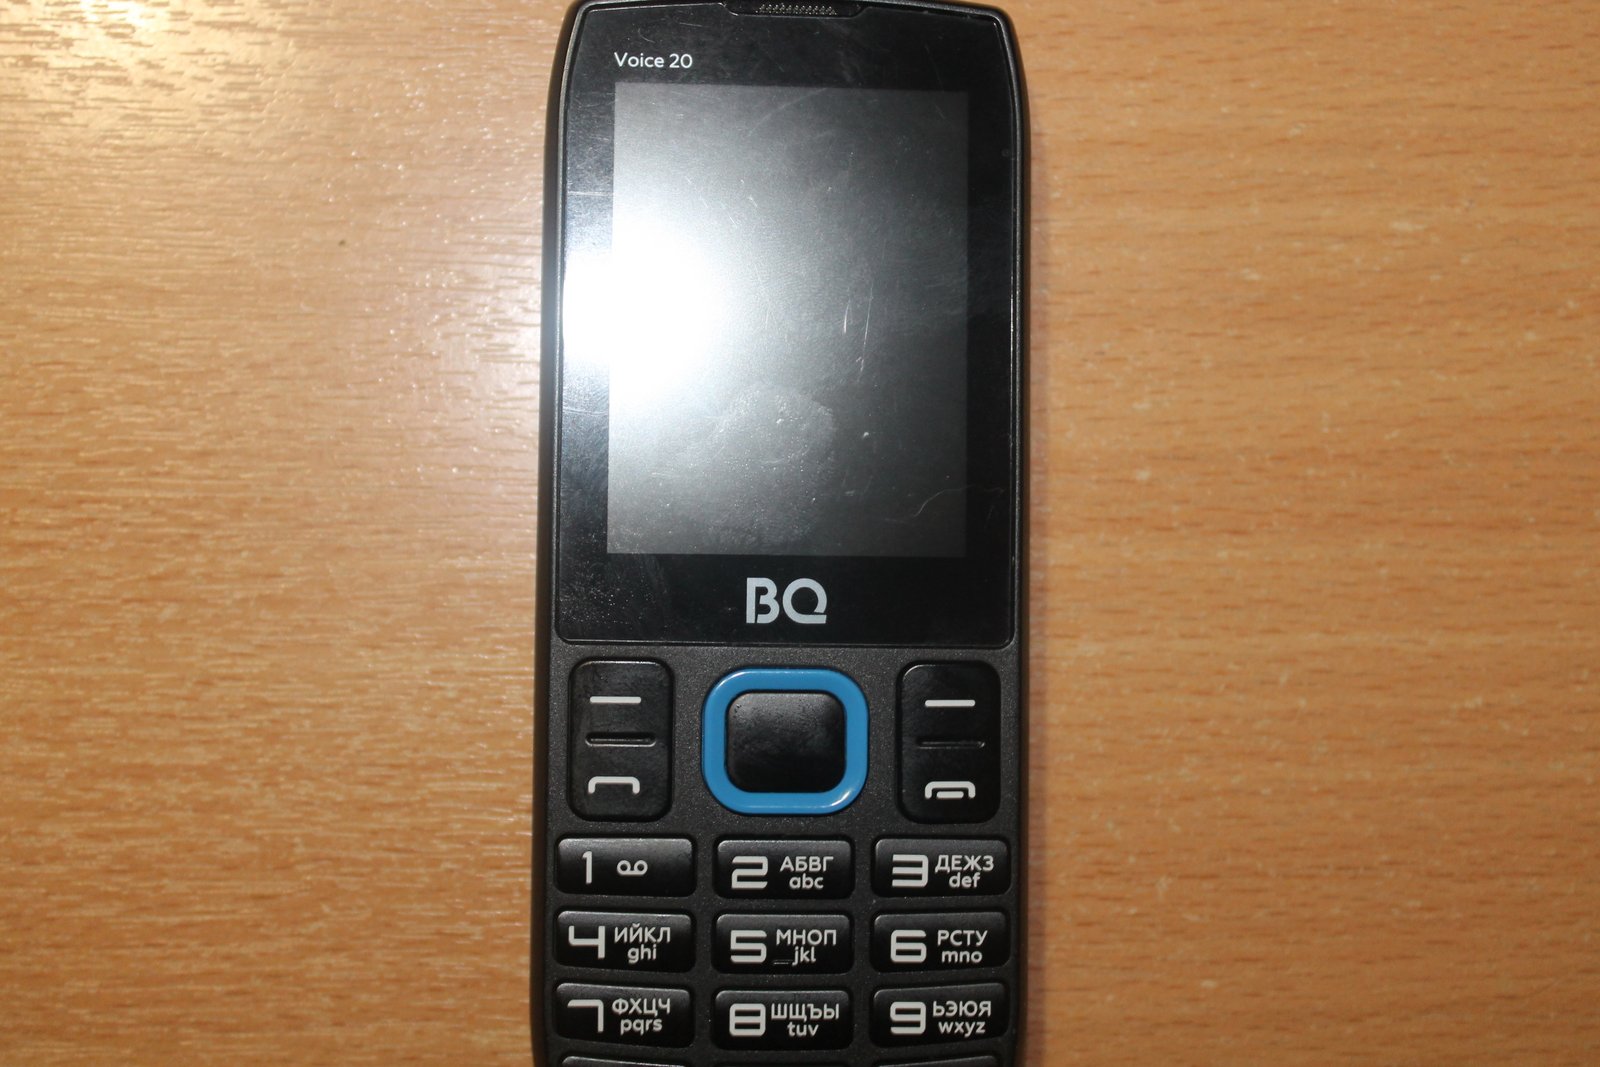 Voice l. BQ 2400l Voice 20. BQ 2400l. Телефоны кнопочные BQ 2400l. BQ Войс 20 телефон.